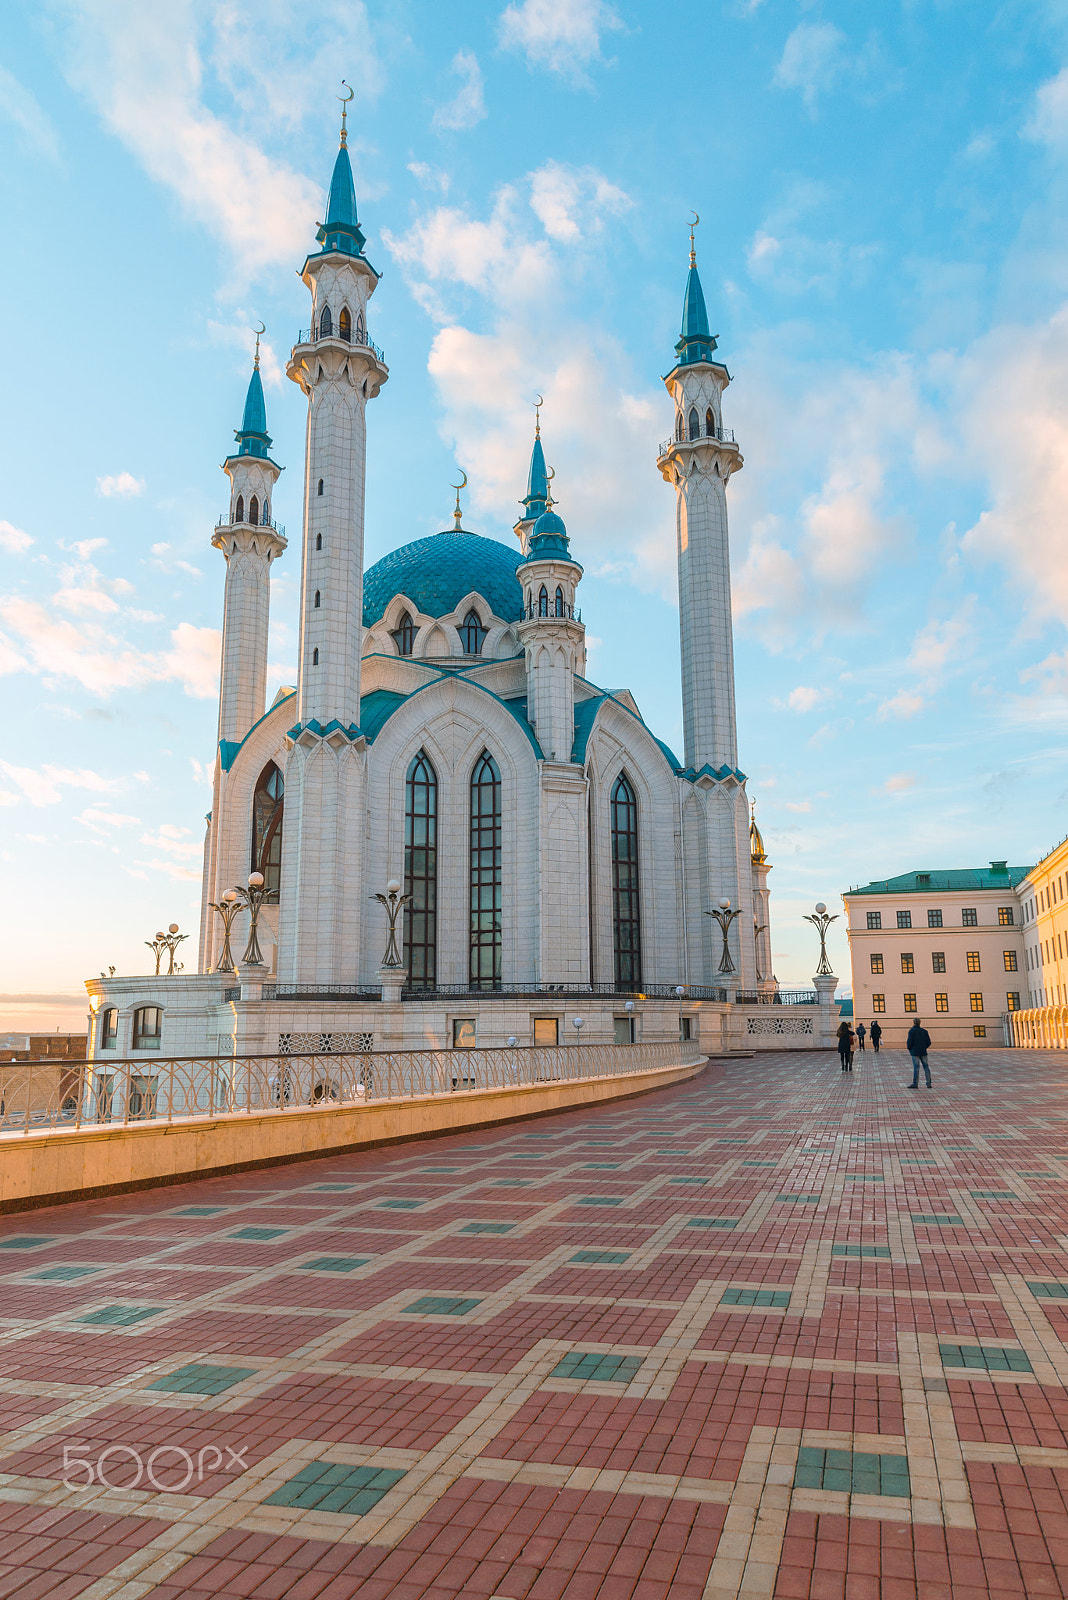 Nikon D600 sample photo. Mosque kul-sharif in kazan kremlin in tatarstan, russia. at sunset photography